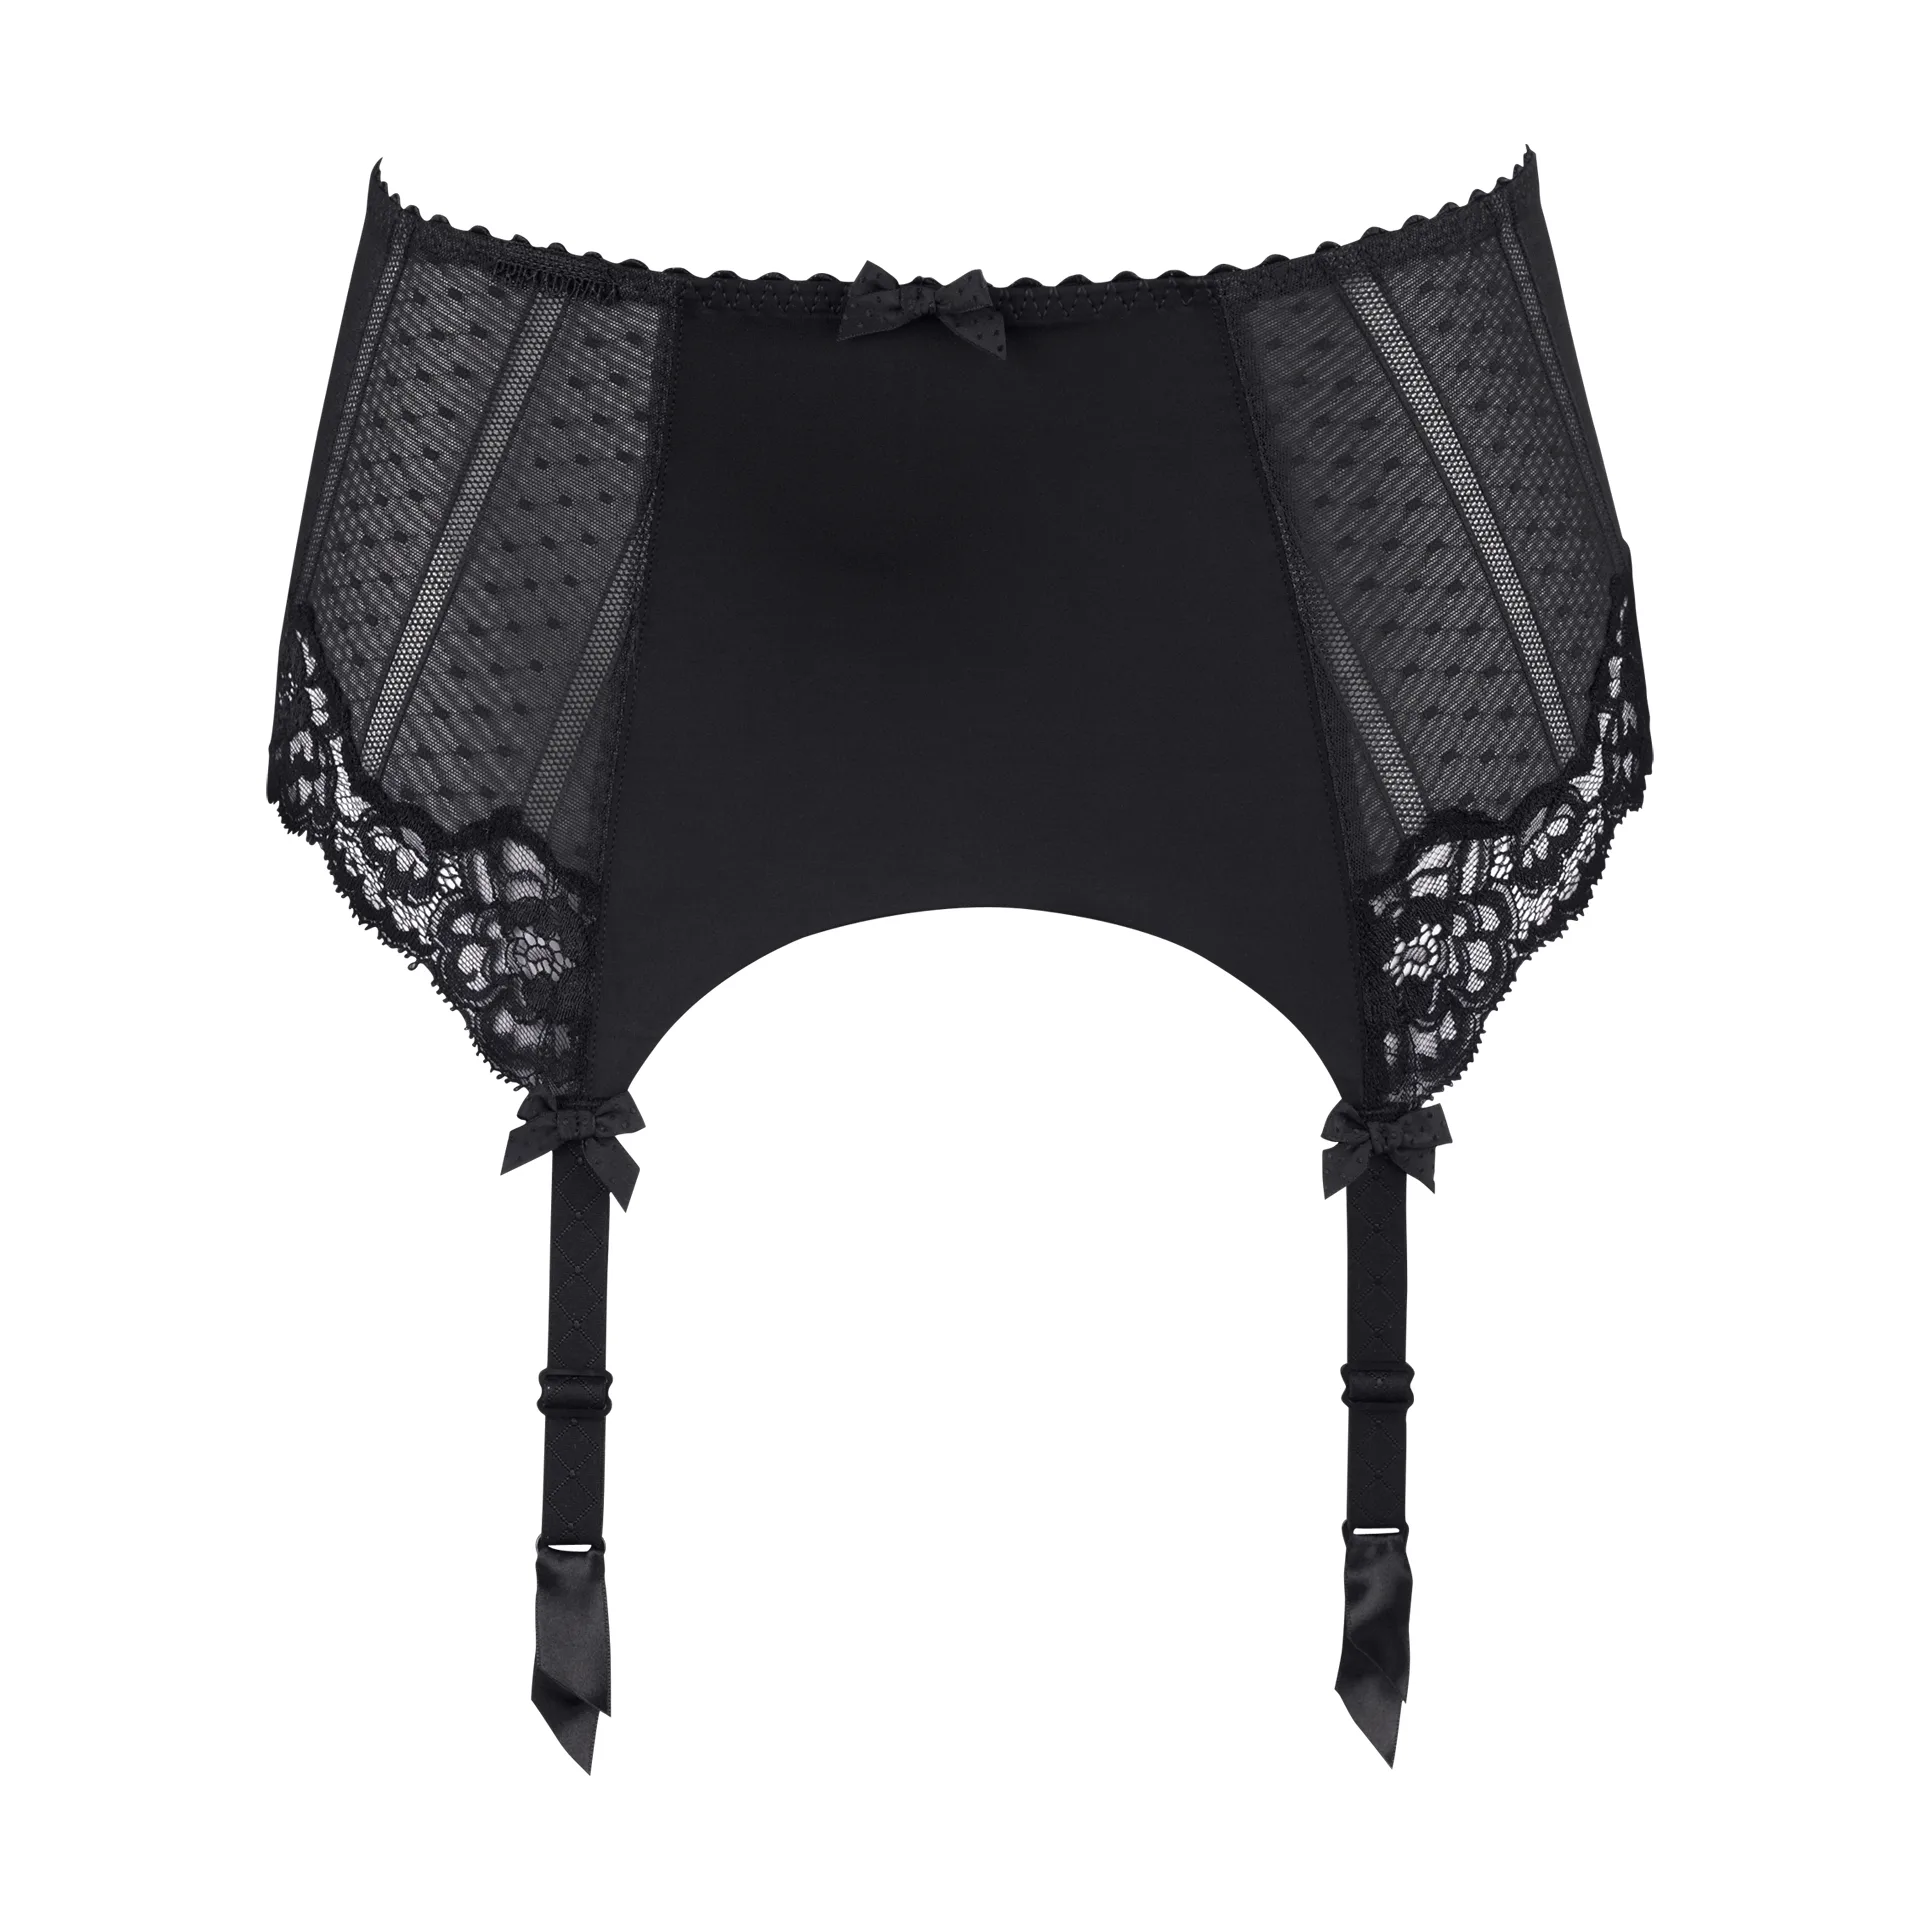 PrimaDonna COUTURE black garter belt